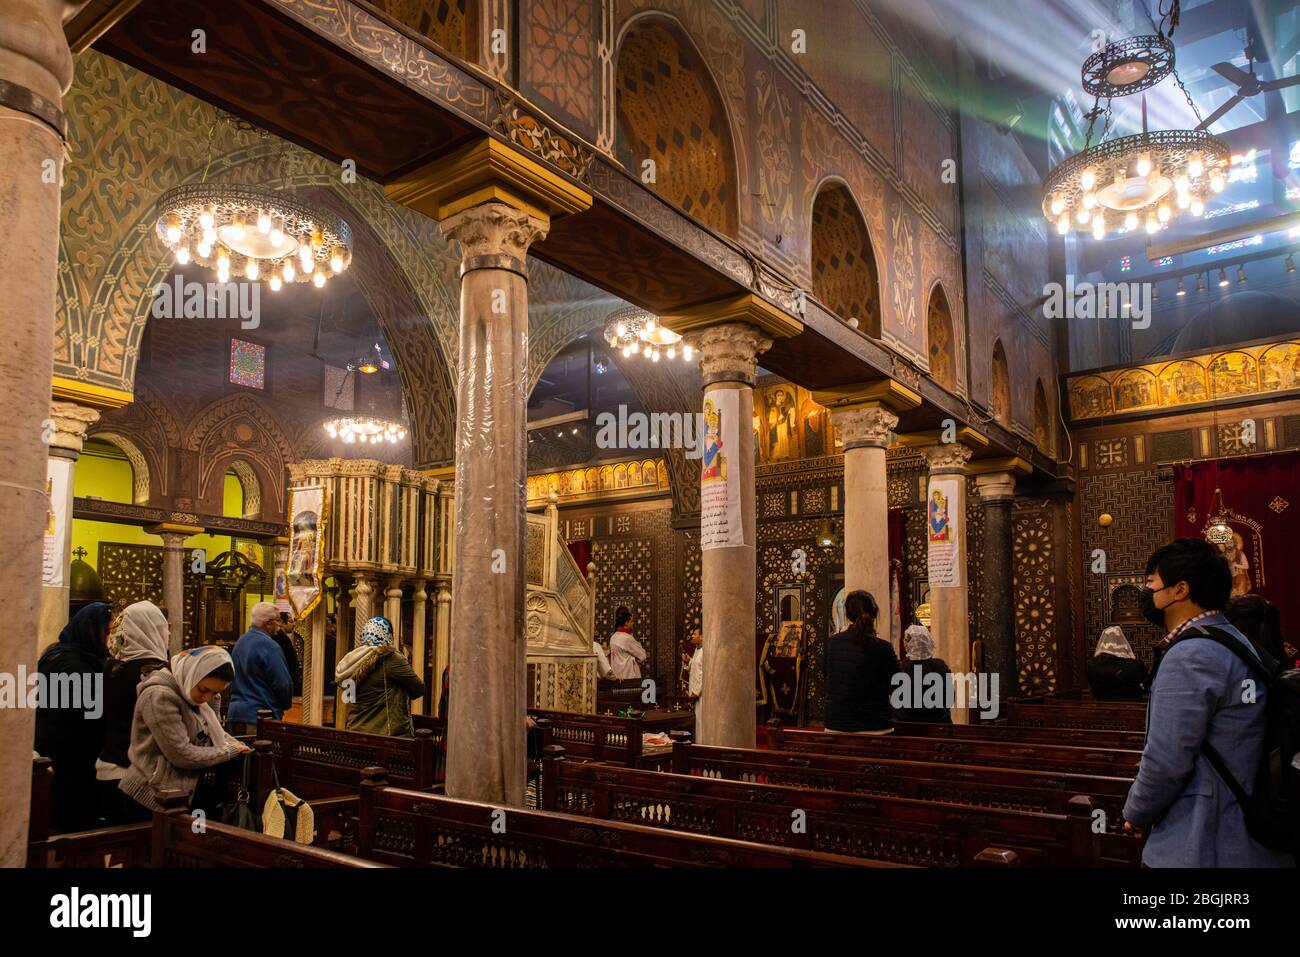 Innenansicht der koptisch-orthodoxen Kirche der Heiligen Jungfrau Maria, auch bekannt als die Hängende Kirche, Kom Ghorab, Alt-Kairo, Ägypten. Stockfoto